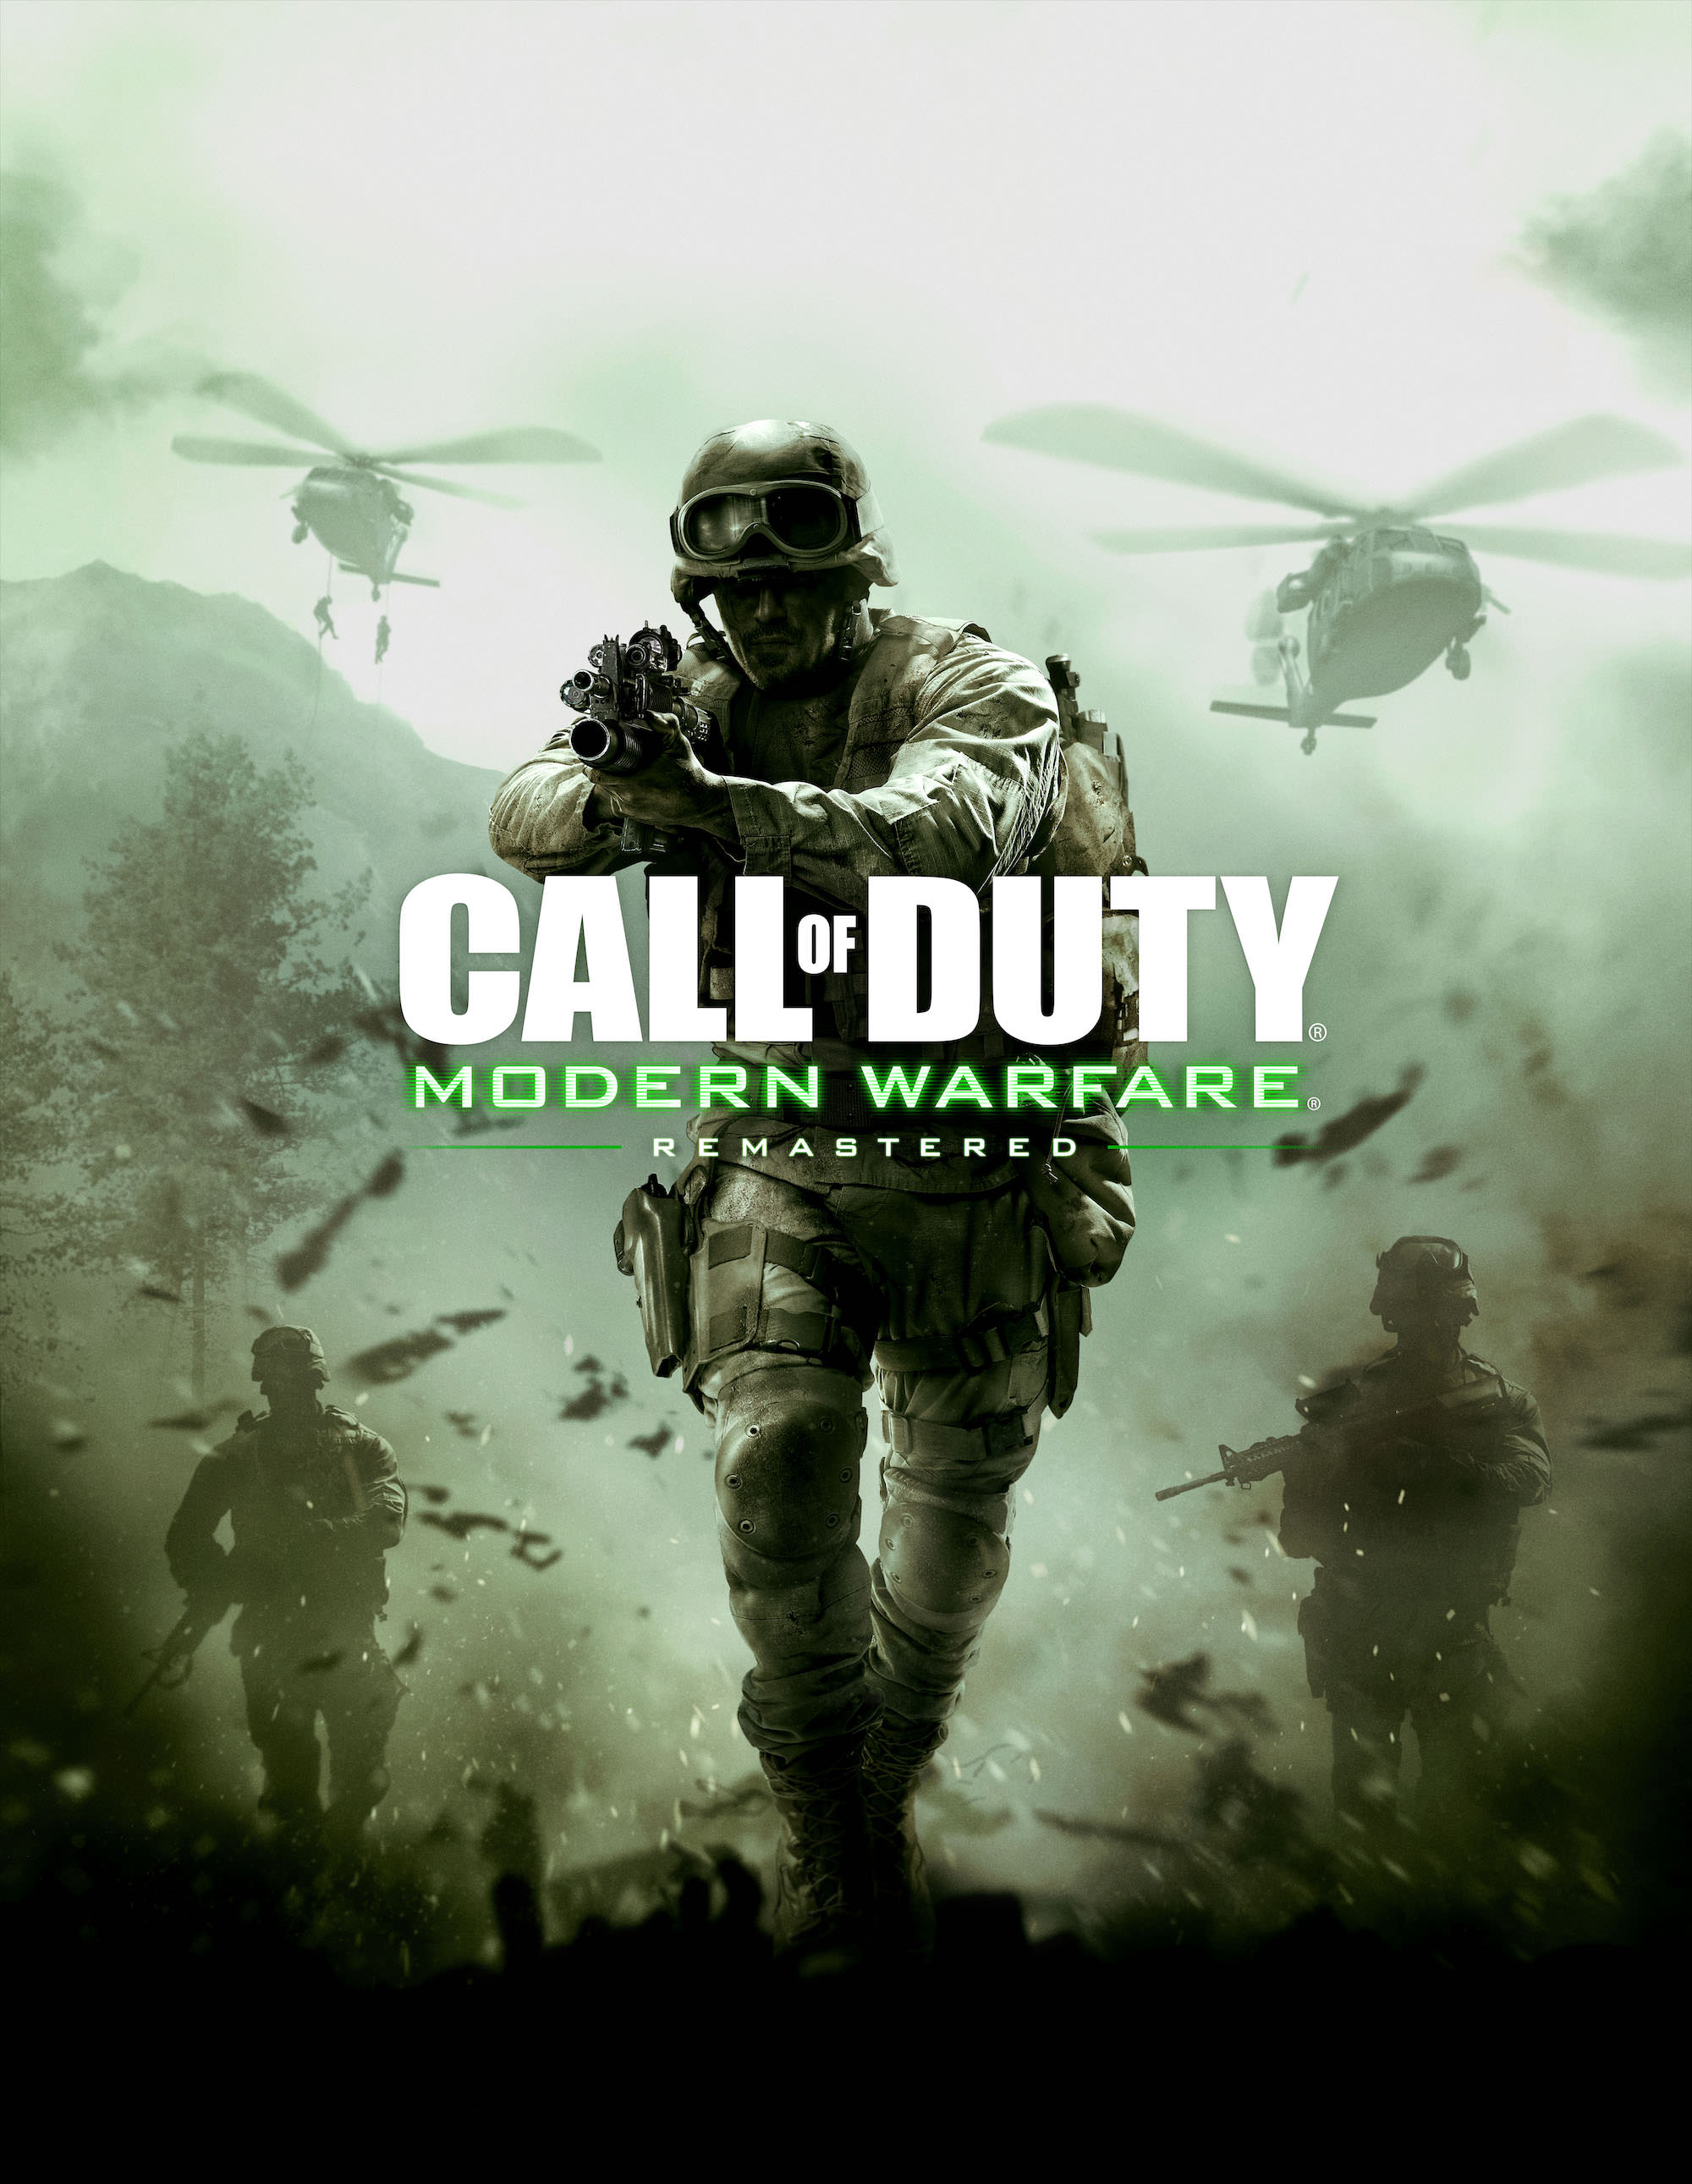 call of duty modern warfare remastered wallpaper,gioco di avventura e azione,gioco per pc,soldato,film,gioco sparatutto